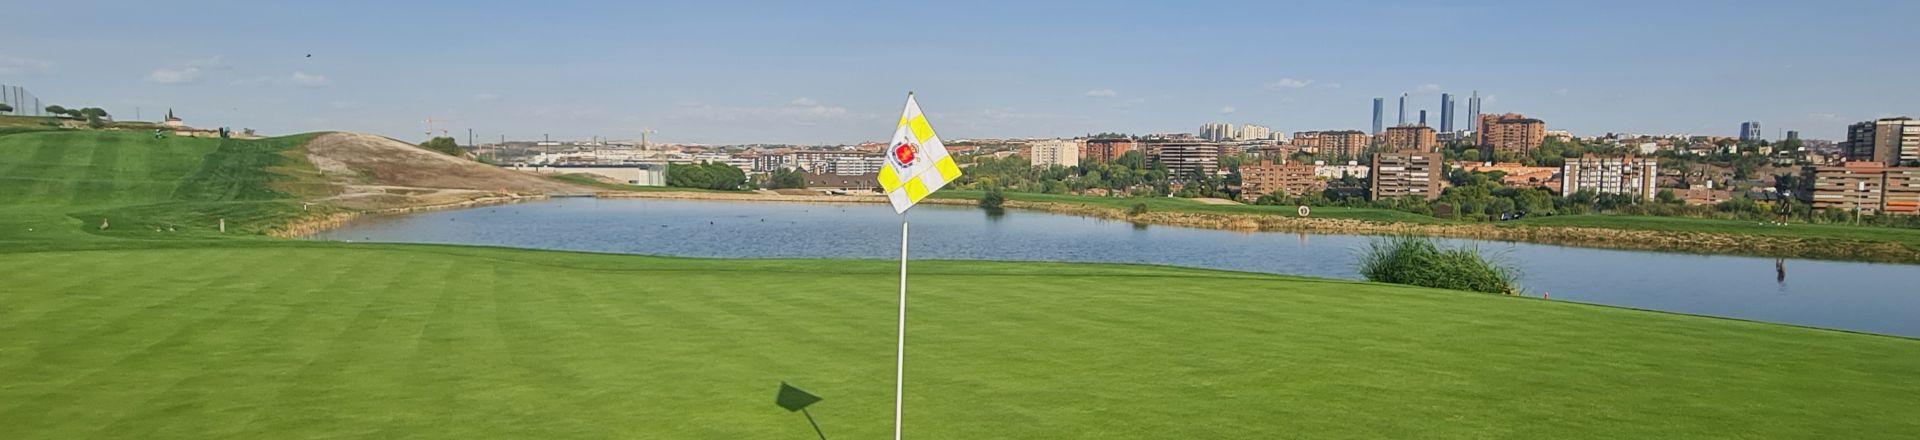 Golfing City Breaks in Madrid Spain